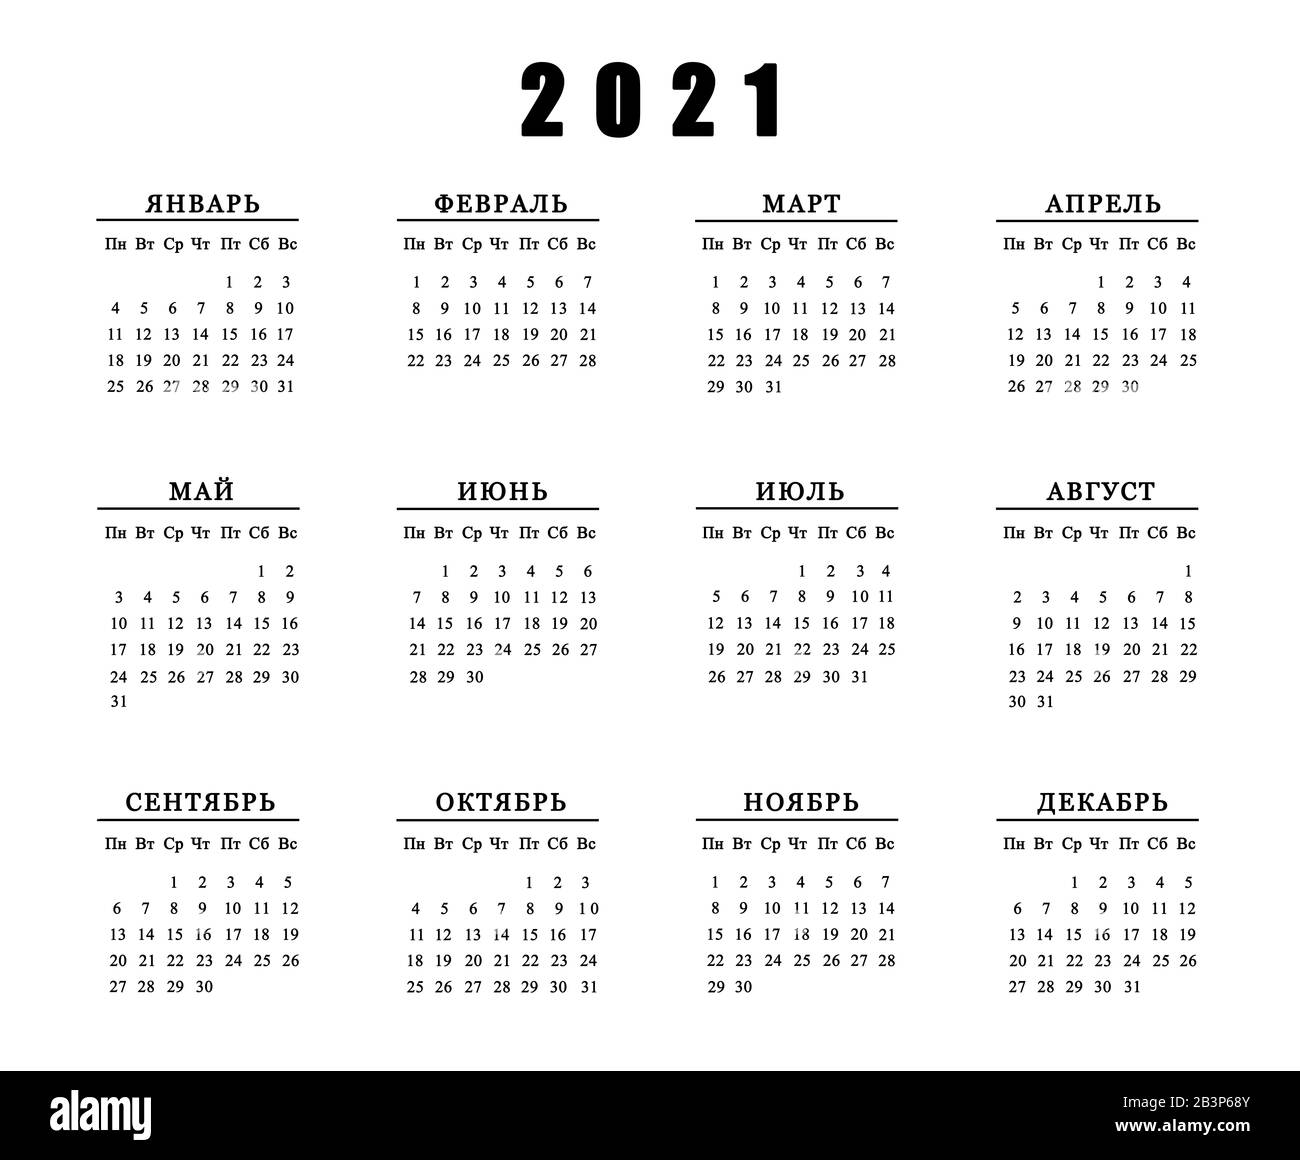 2021 calendar black and white Calendar 2021 Black And White Stock Photos Images Alamy 2021 calendar black and white